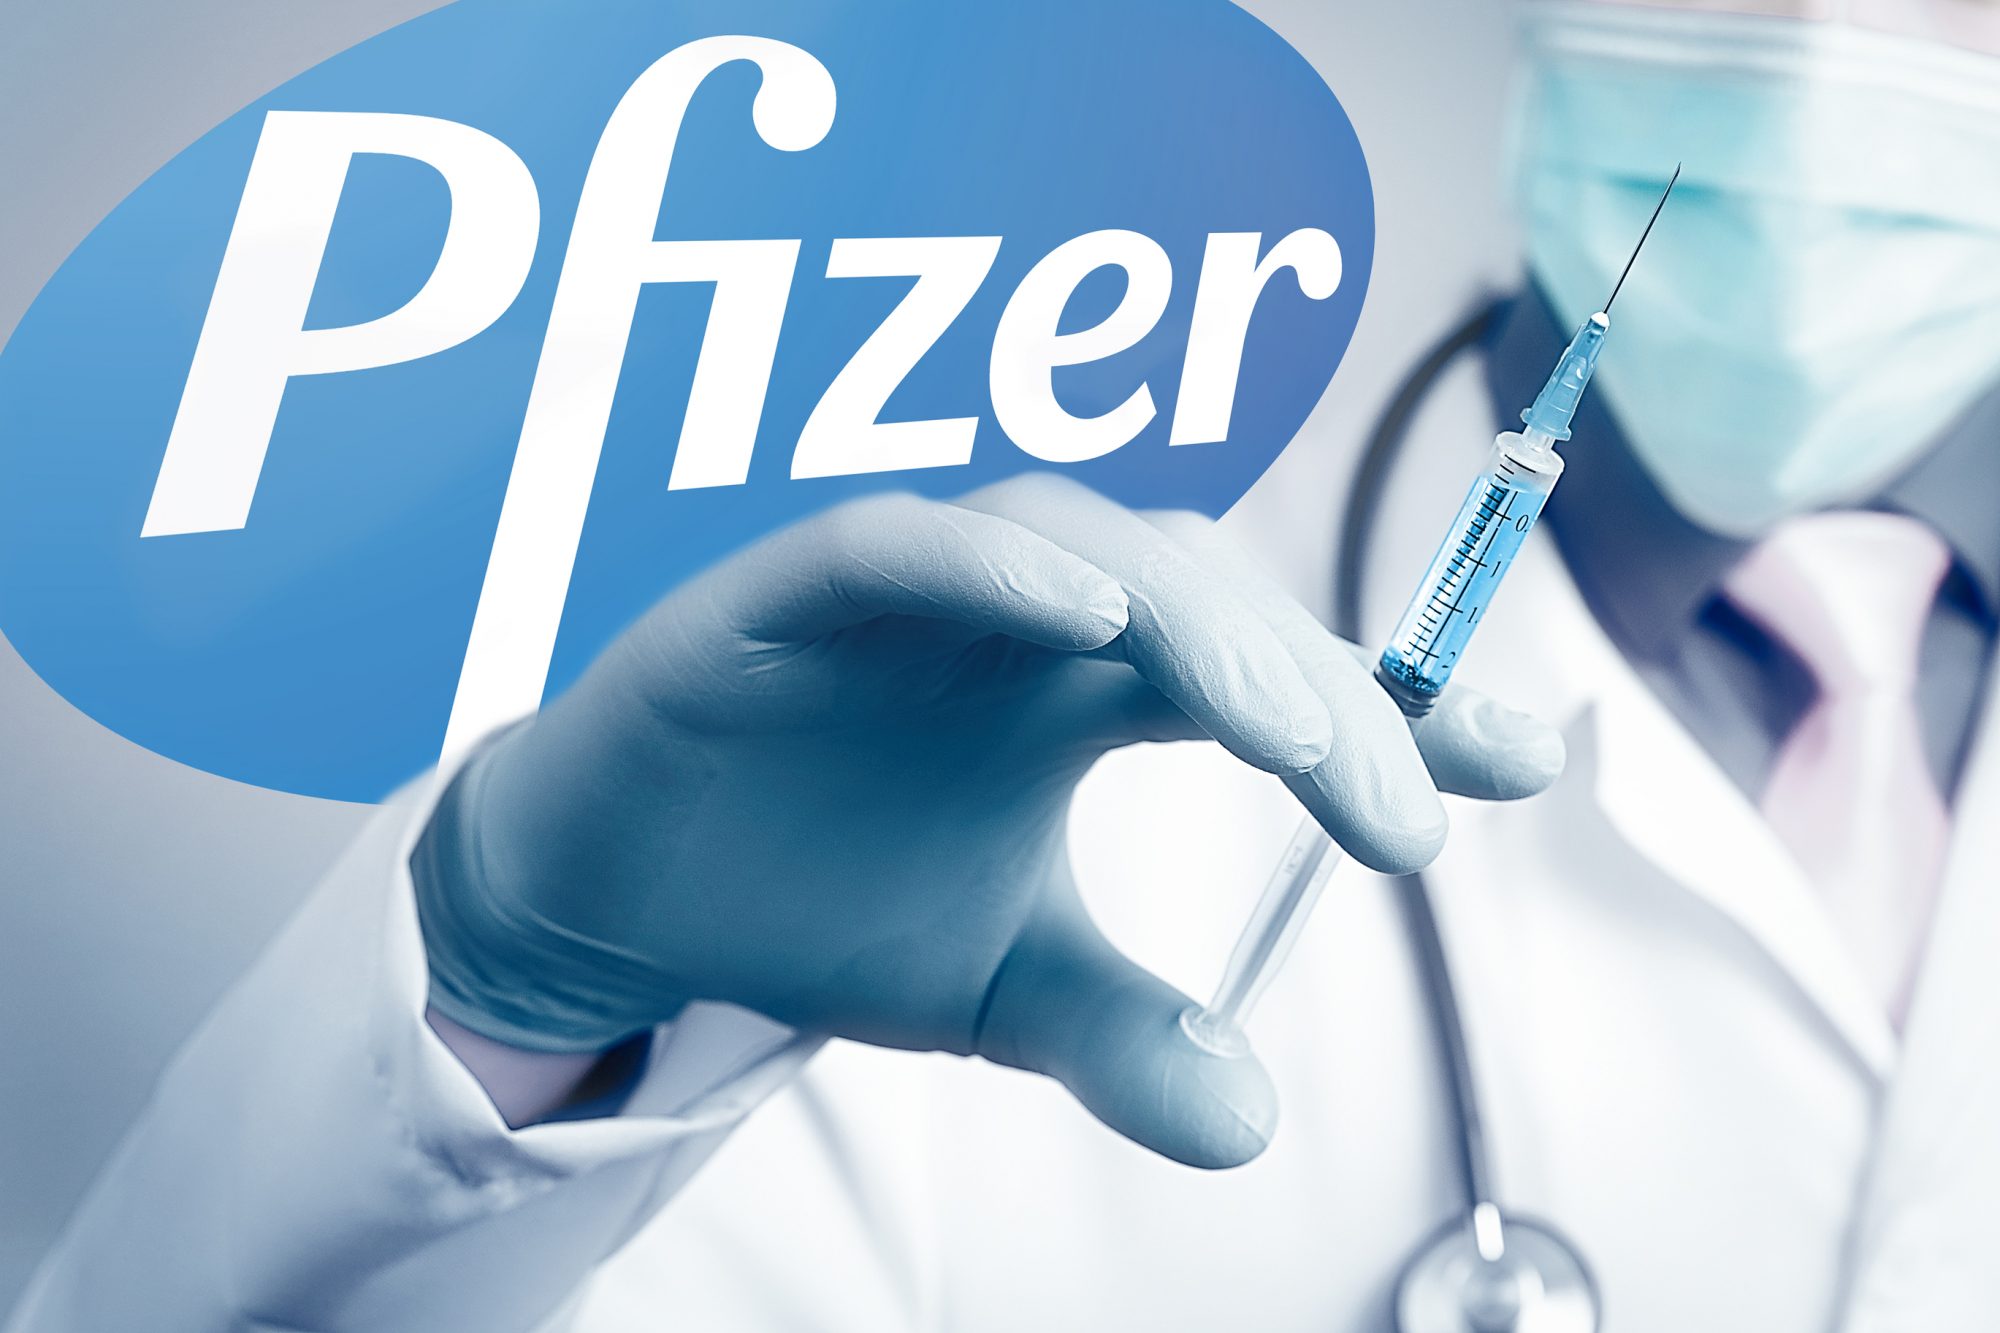 Мажилисмены потребовали озвучить точную дату начала платной вакцинации Pfizer  